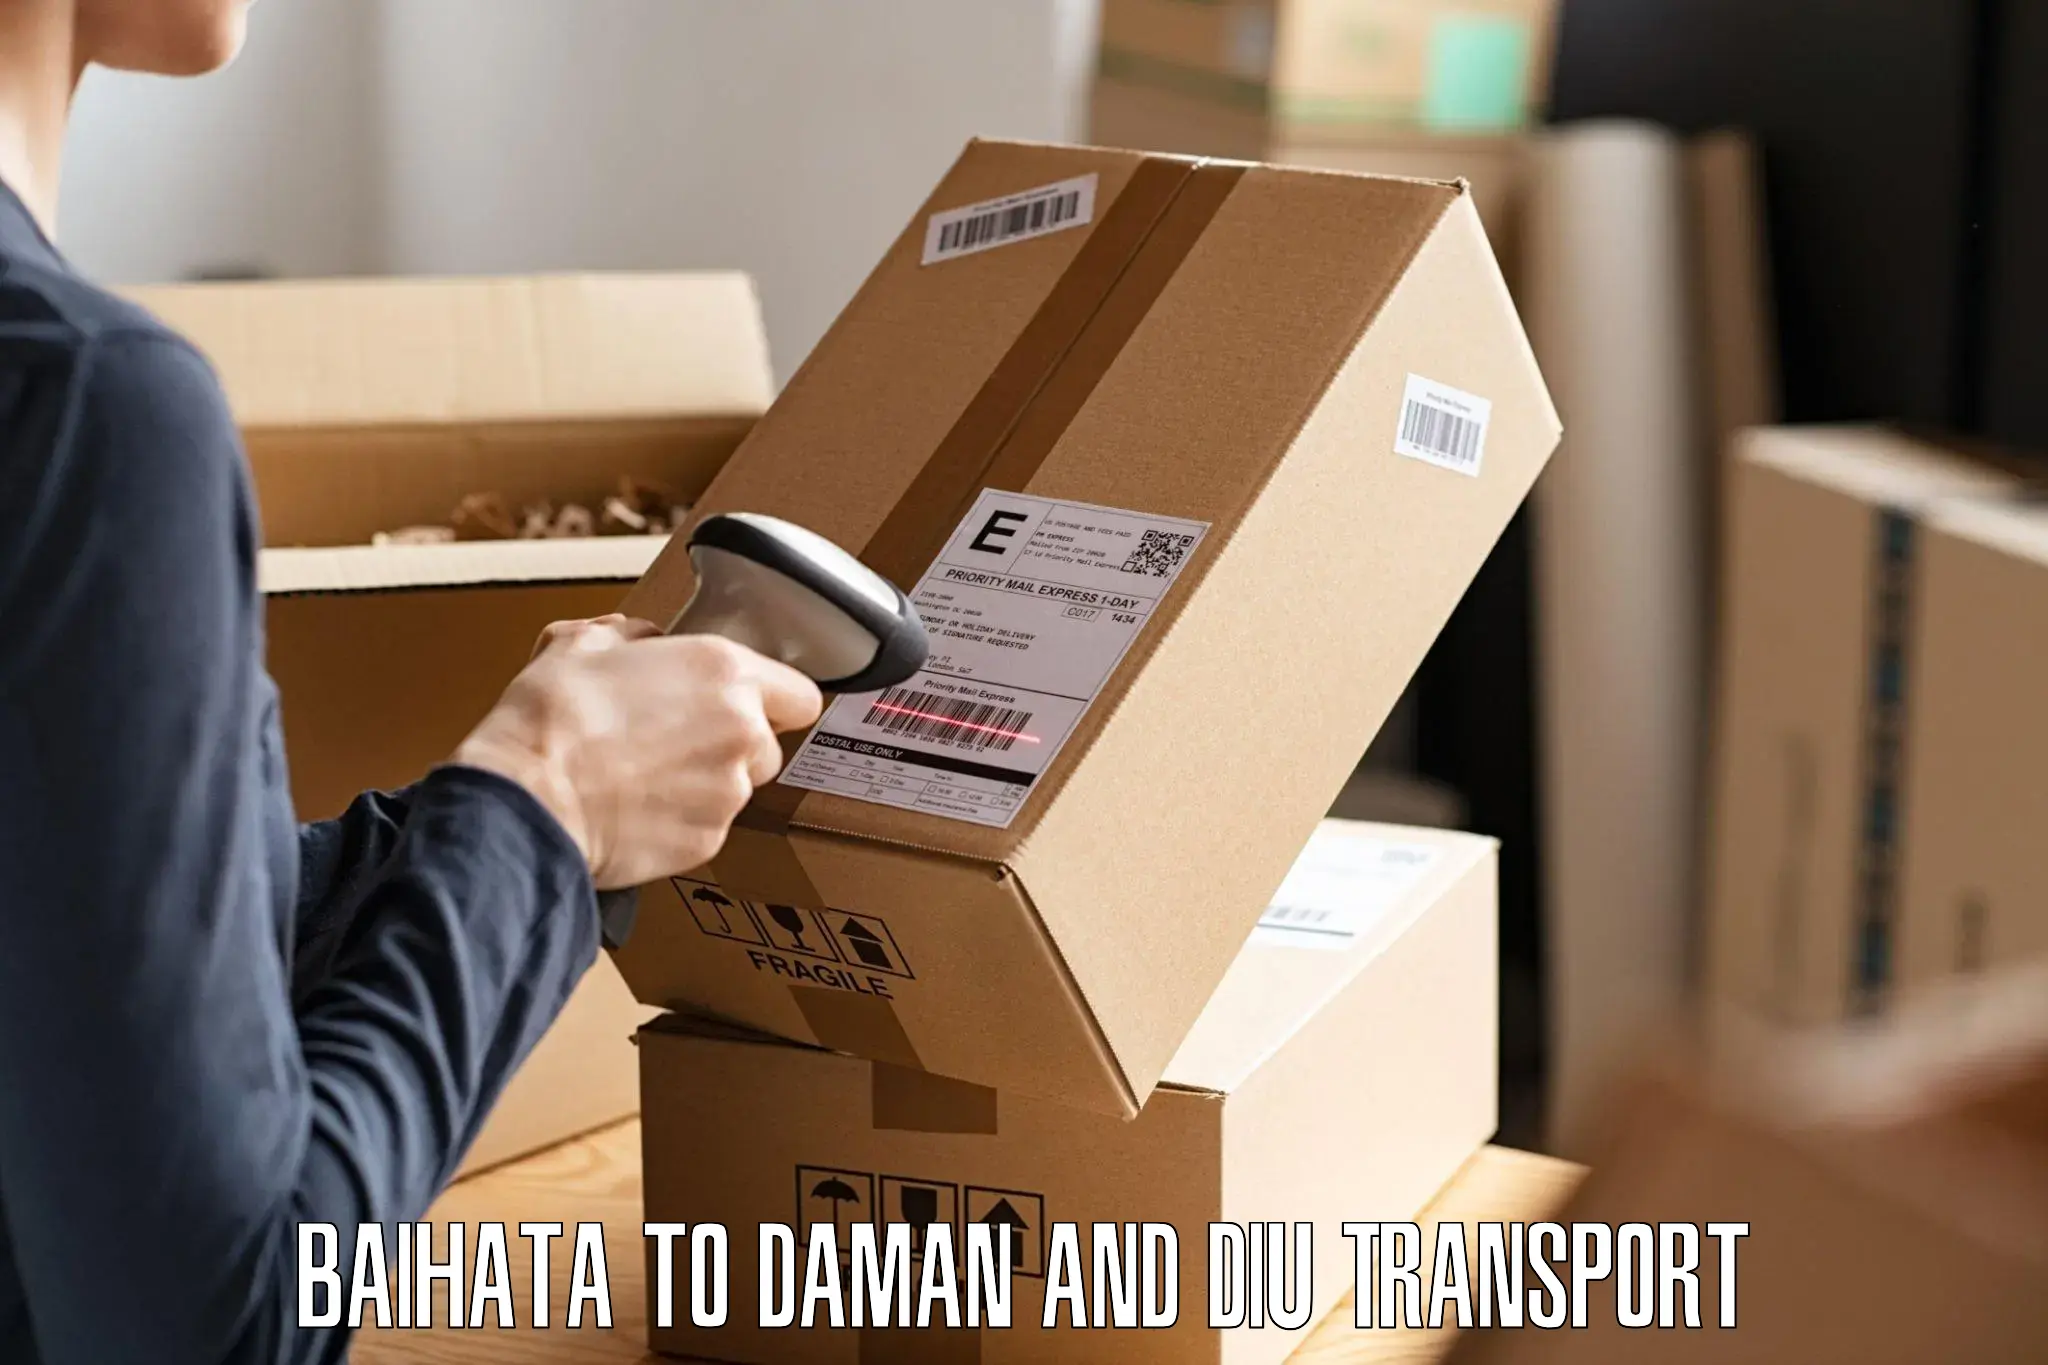 Furniture transport service Baihata to Diu